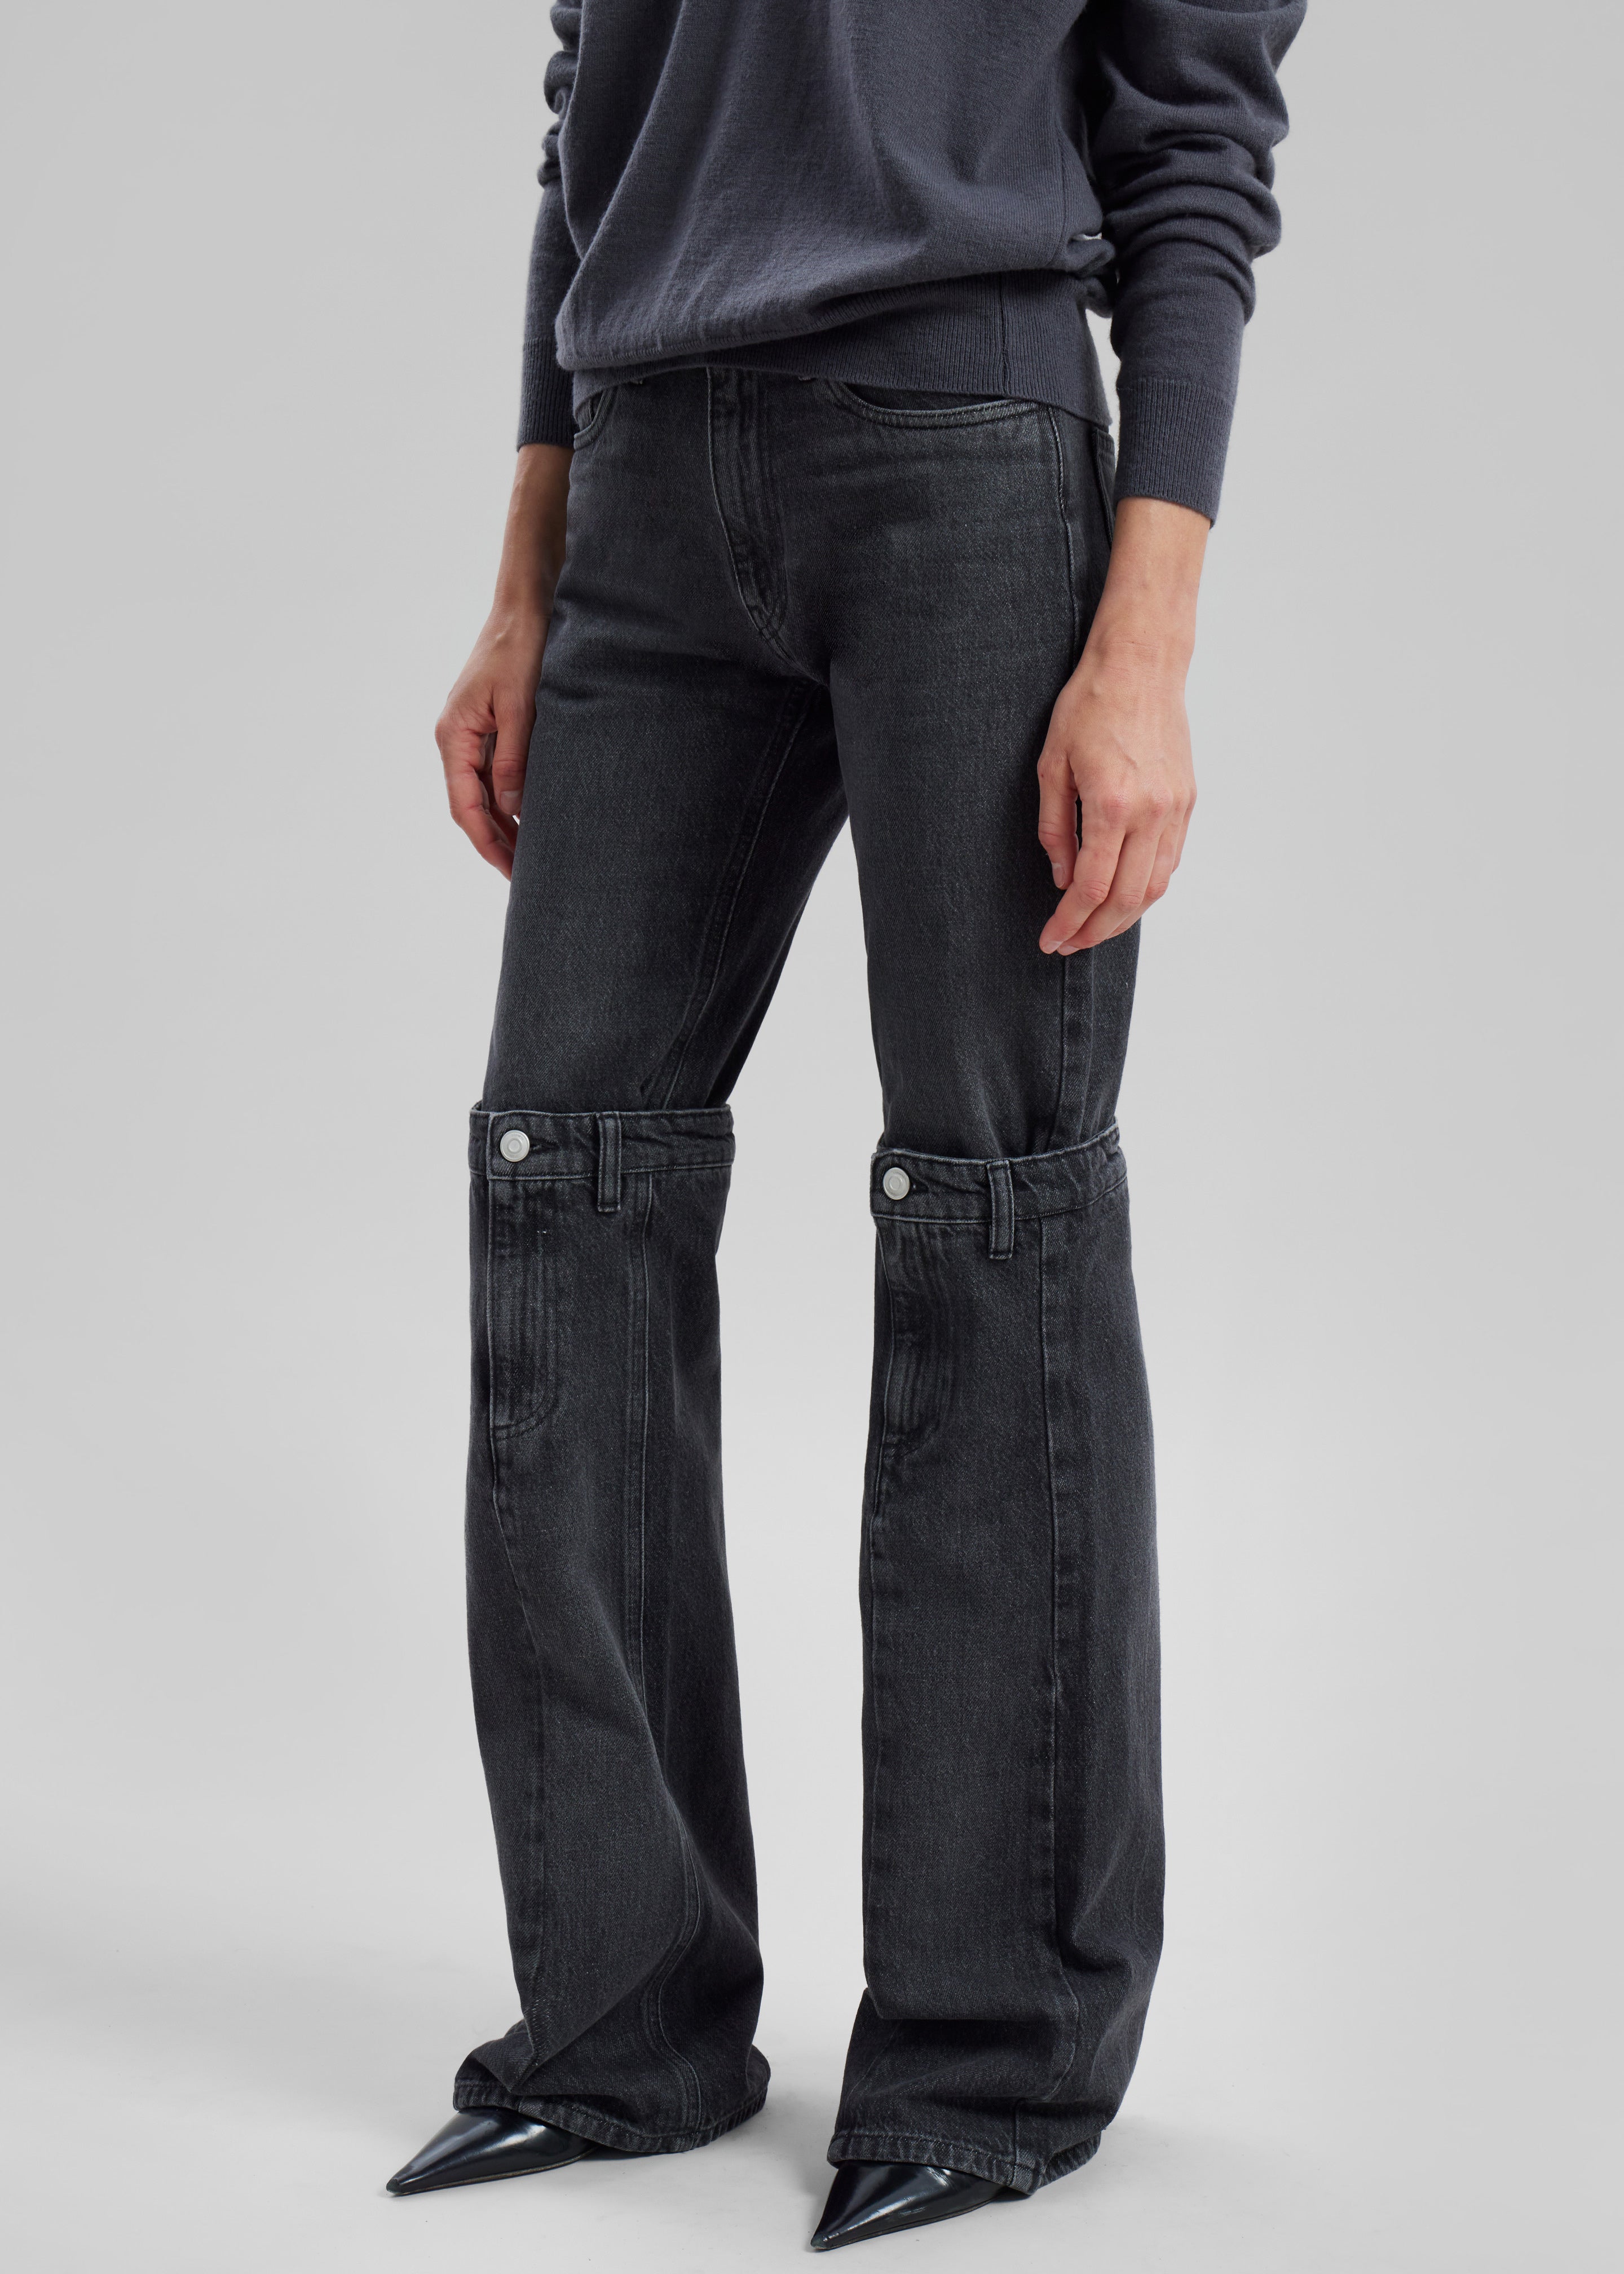 Coperni Open Knee Jeans - Washed Black - 1